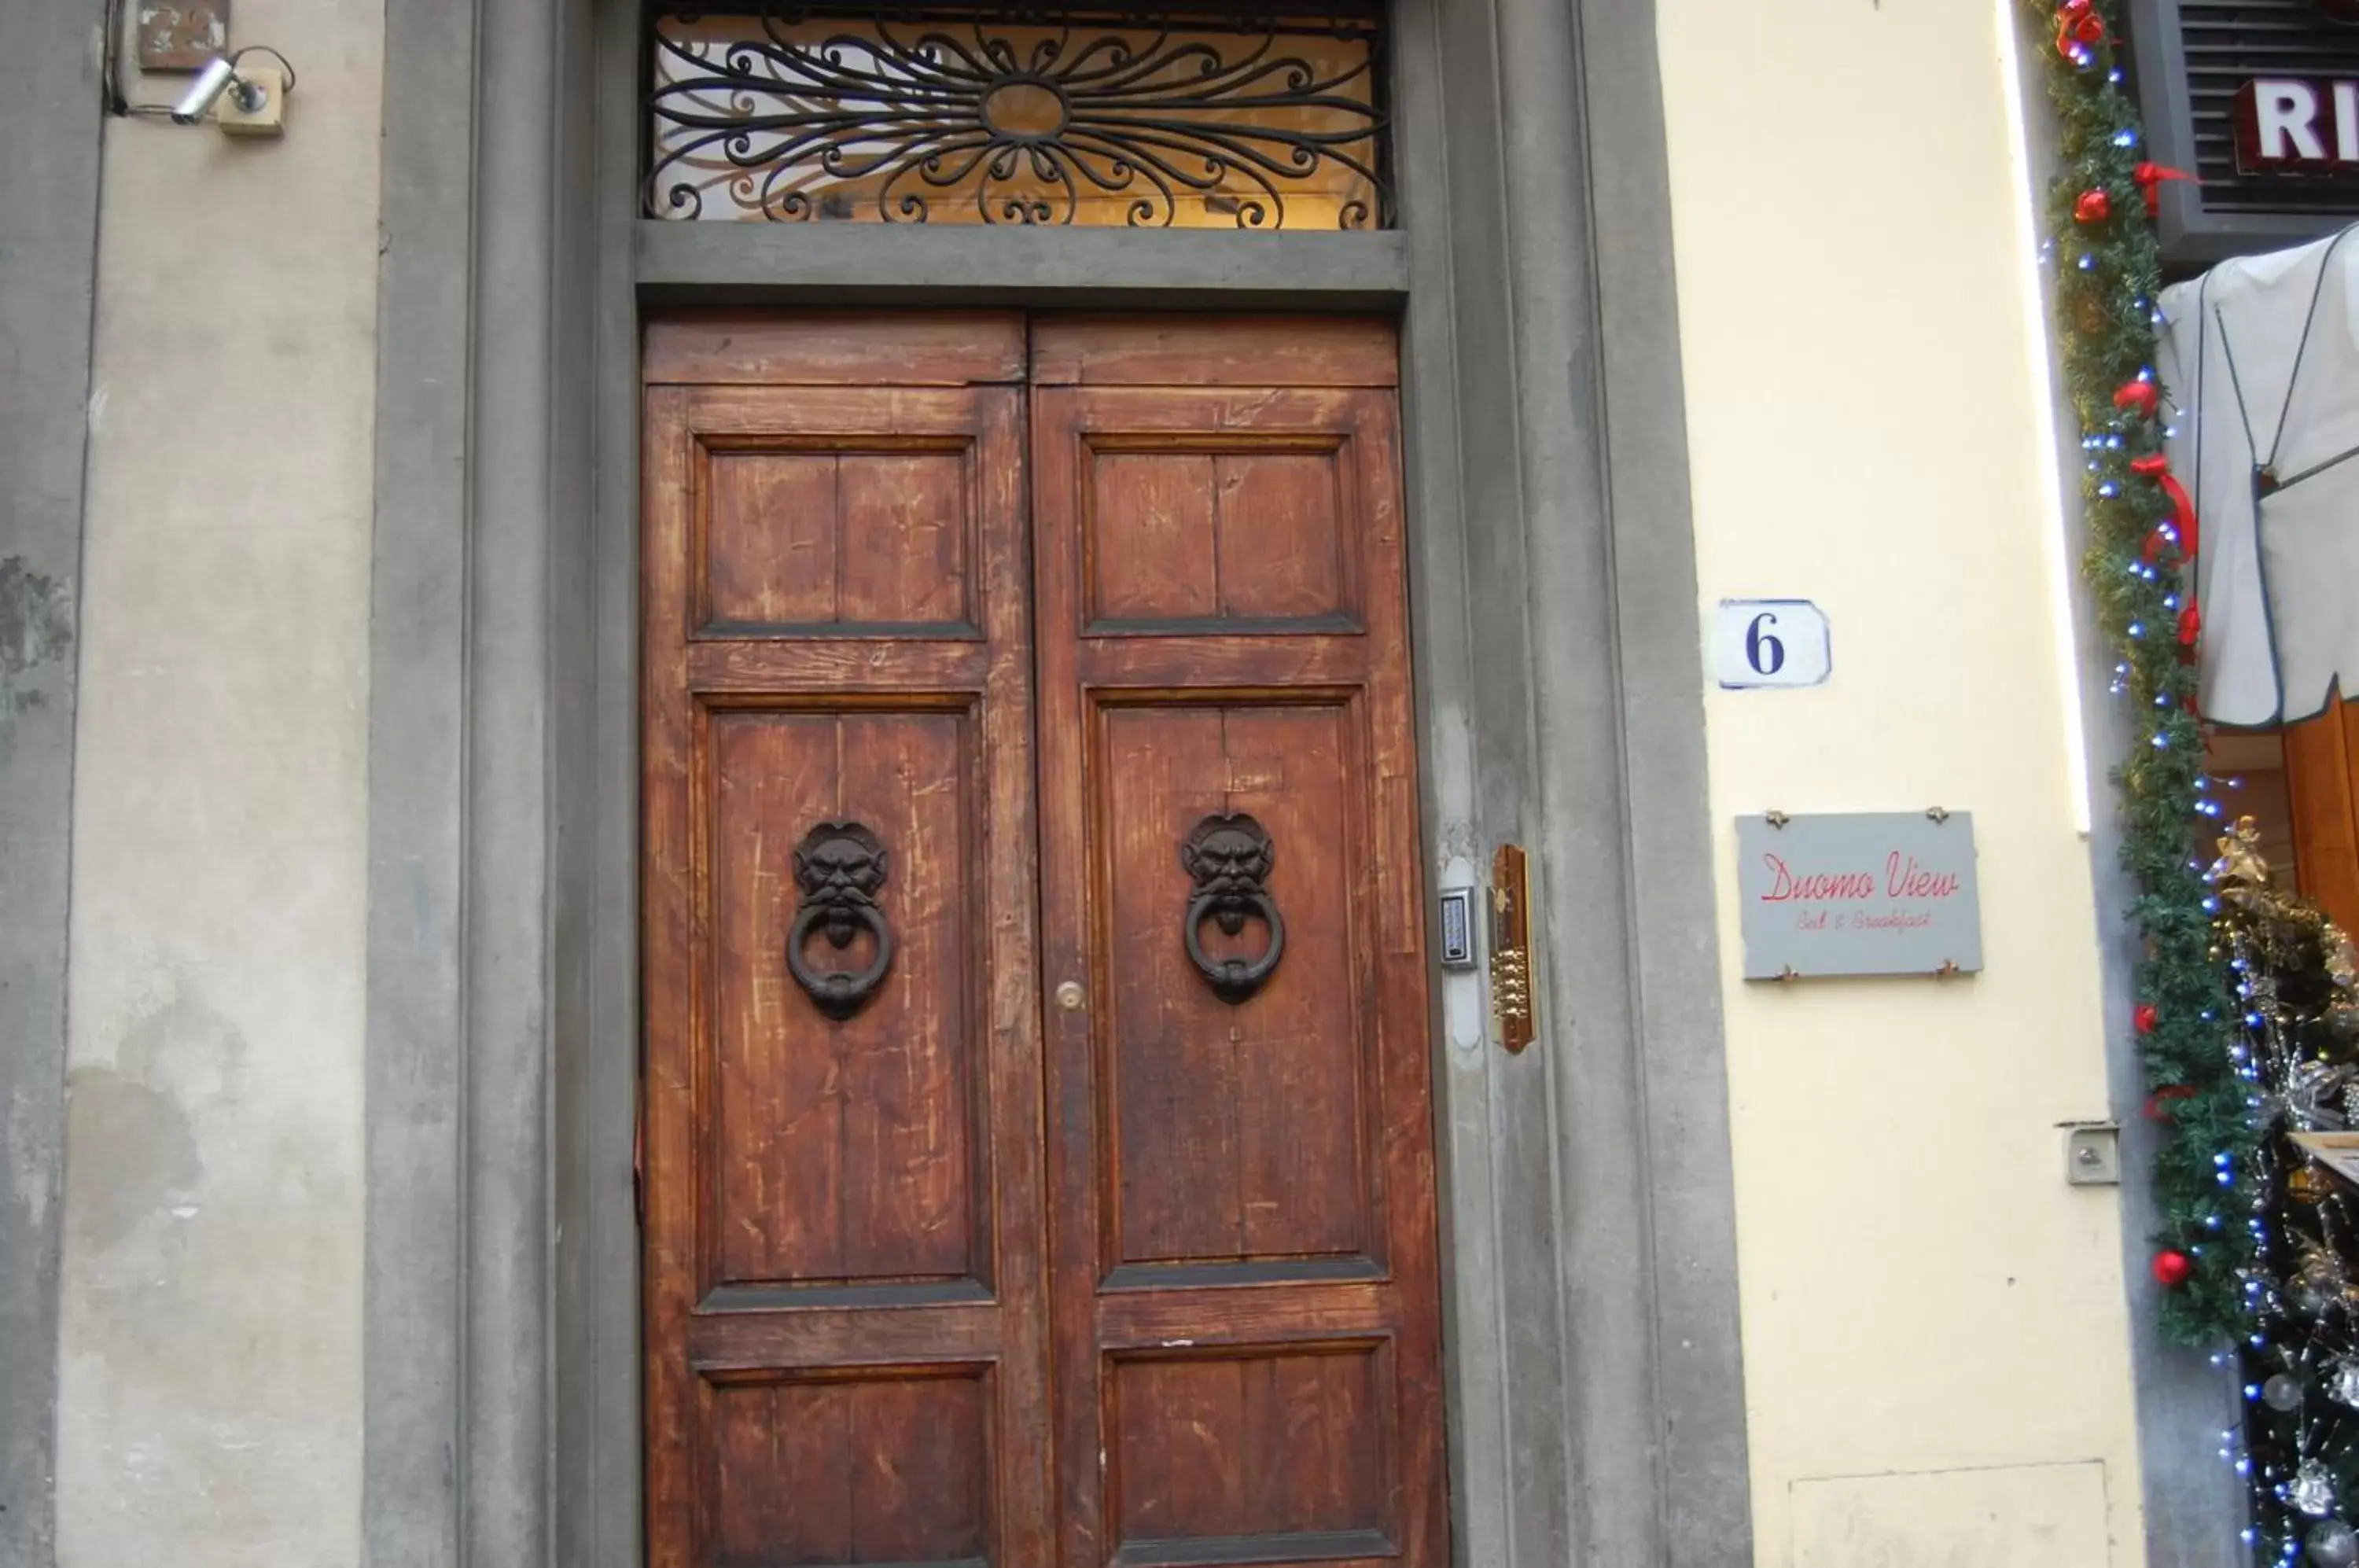 Property logo or sign, Facade/Entrance in Duomo View